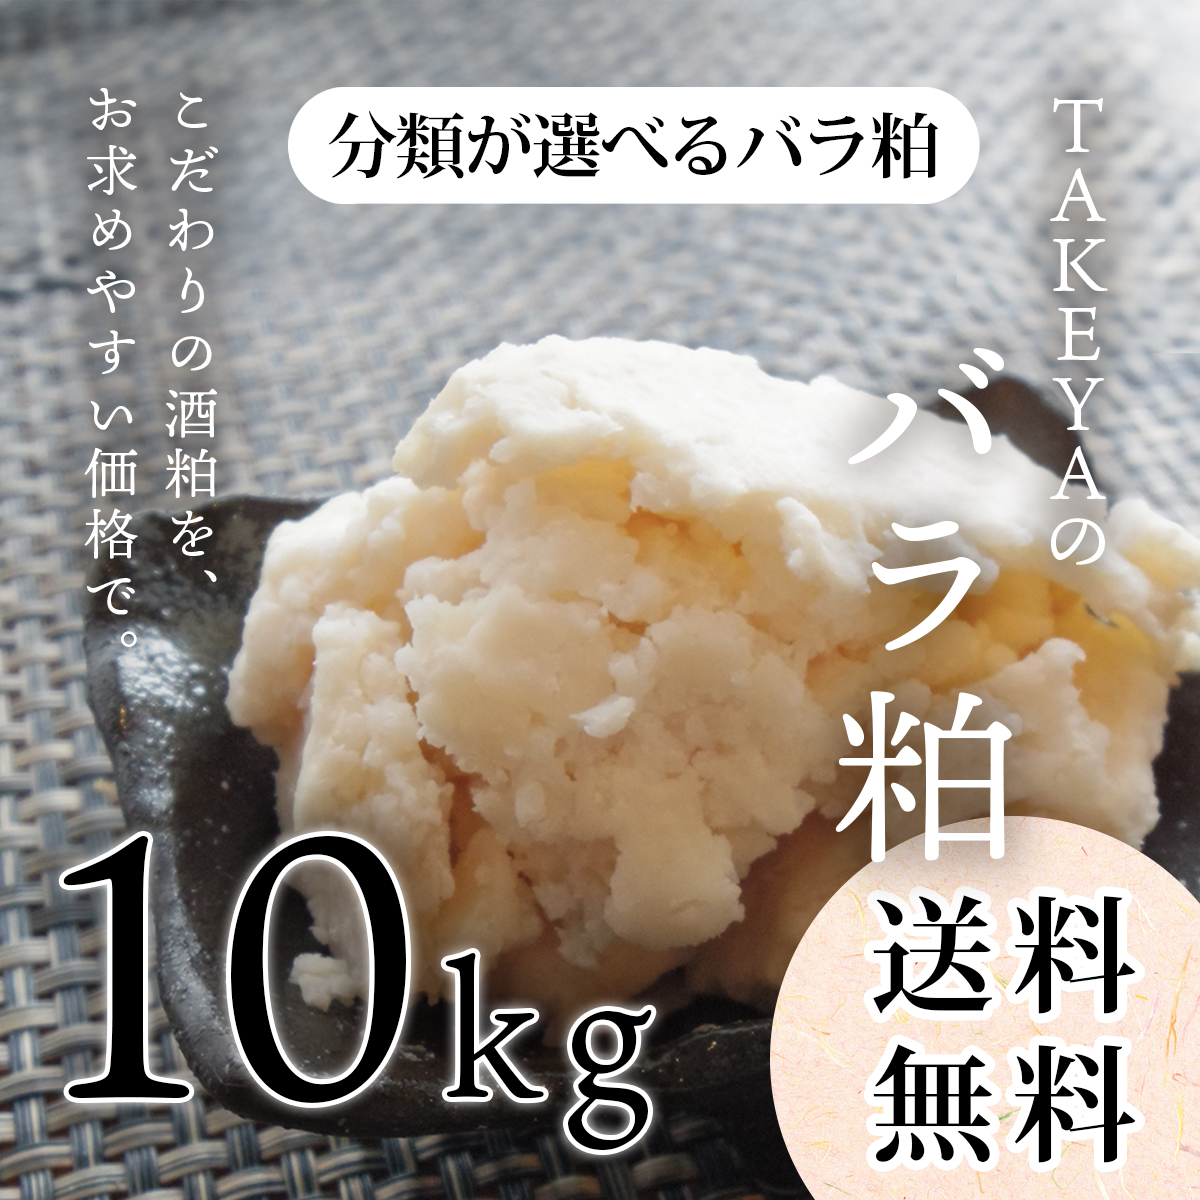 TAKEYAの分類が選べるバラ粕 (極上純米大吟醸から純米まで) 10kg